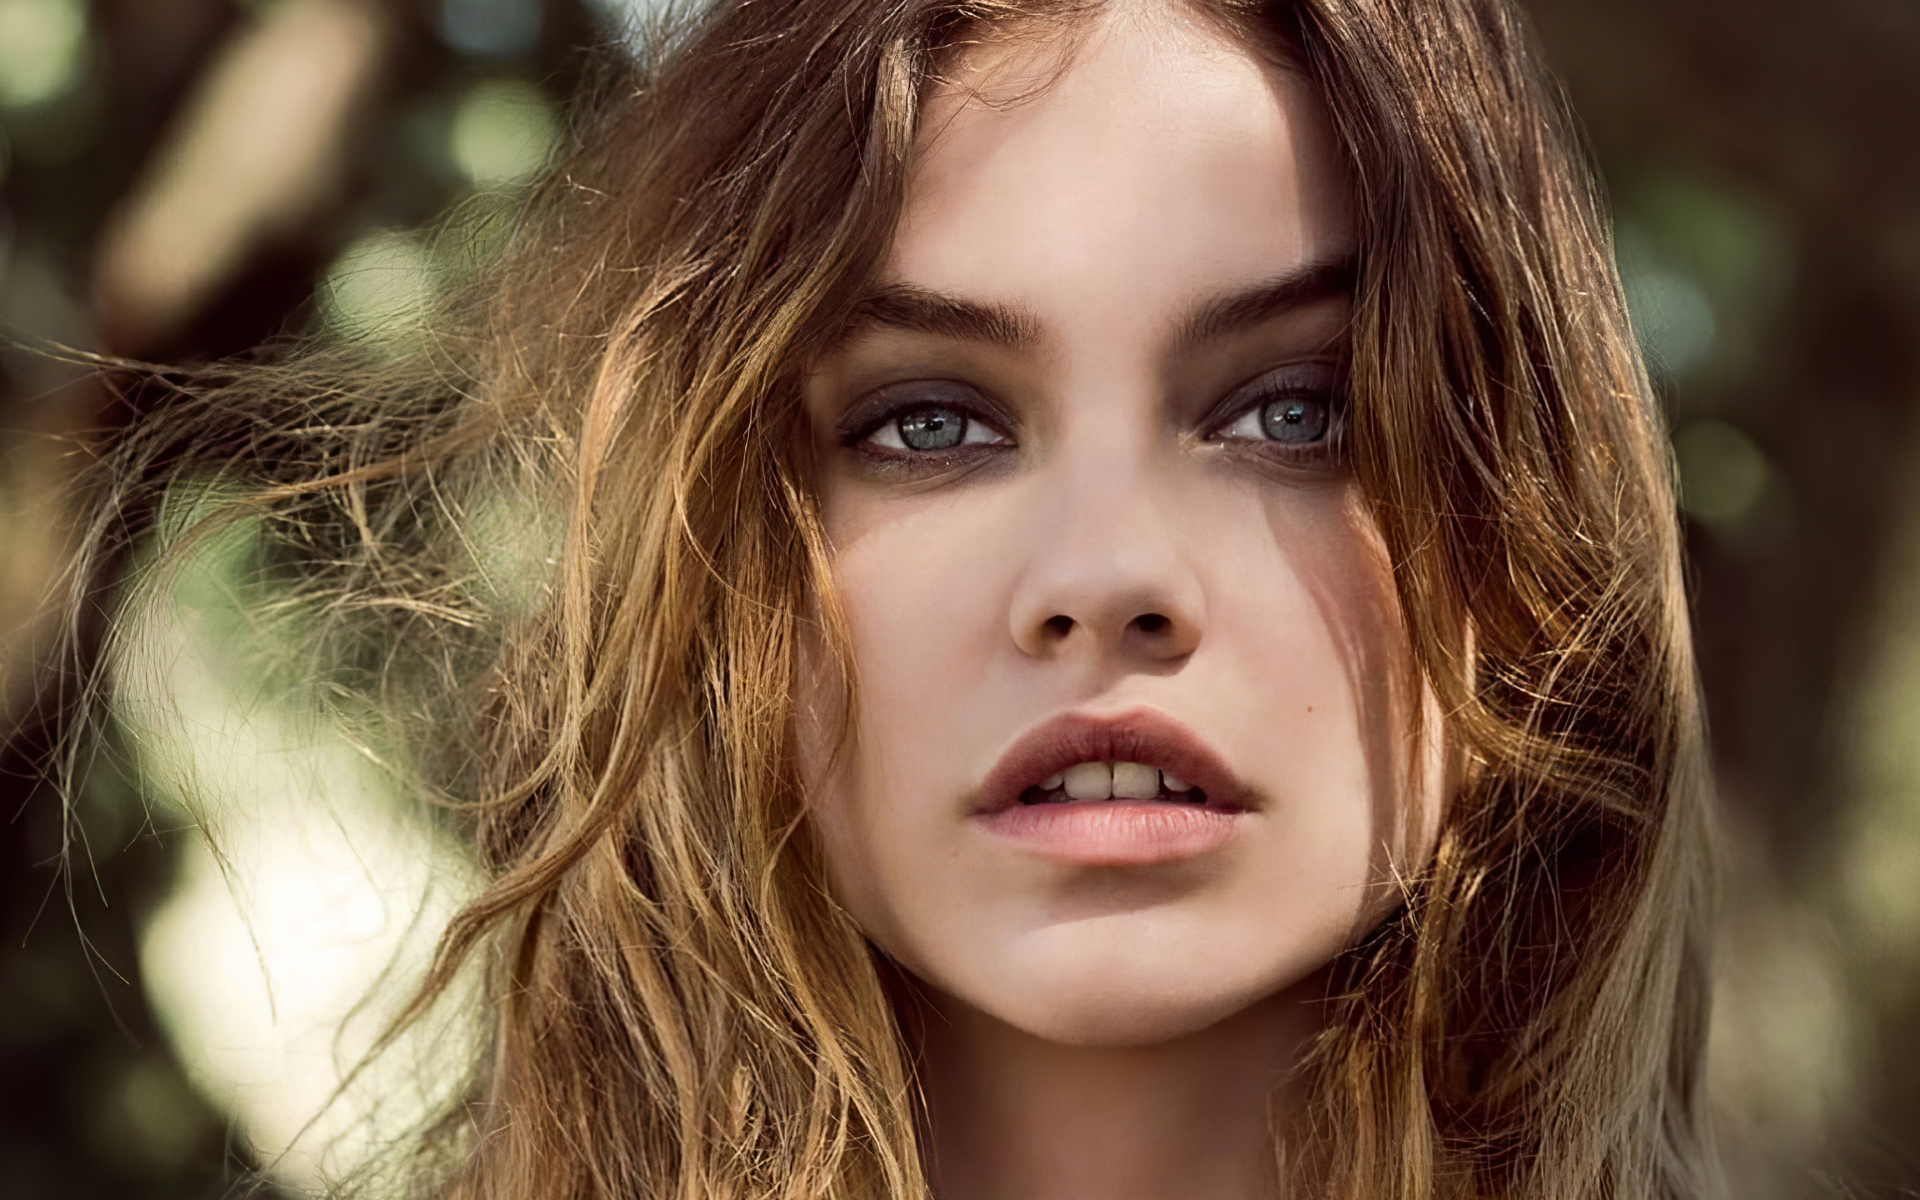 Beautiful face close-up, model Barbara Palvin